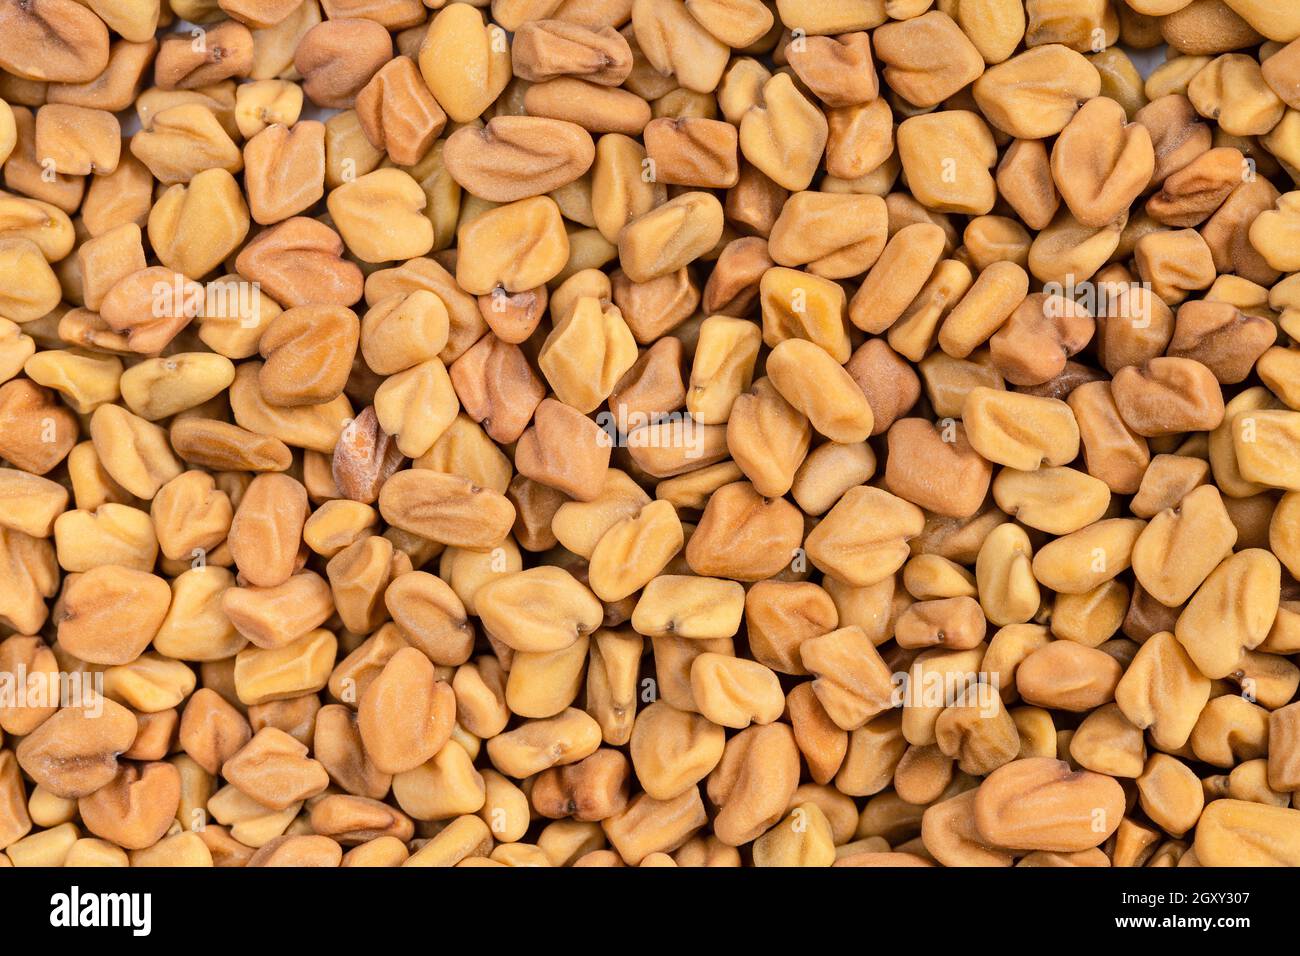 food background - many whole fenugreek seeds Stock Photo